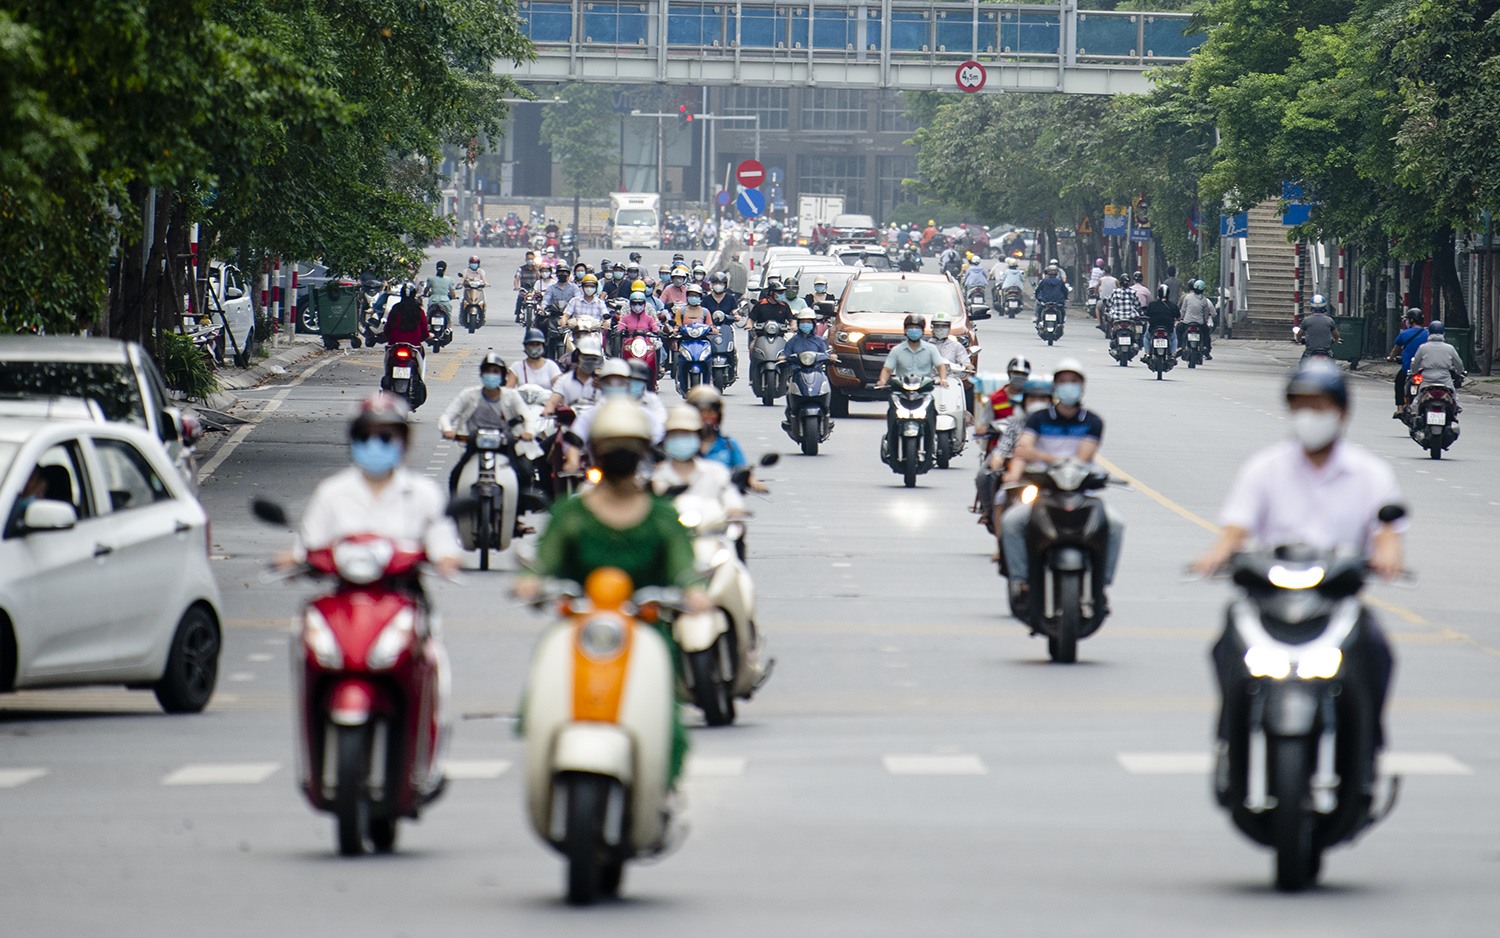 Trên đường Phạm Ngọc Thạch, lượng phương tiện cũng tăng lên đáng kể so với những ngày đầu Hà Nội mới áp dụng lệnh giãn cách theo Chỉ thị 16.